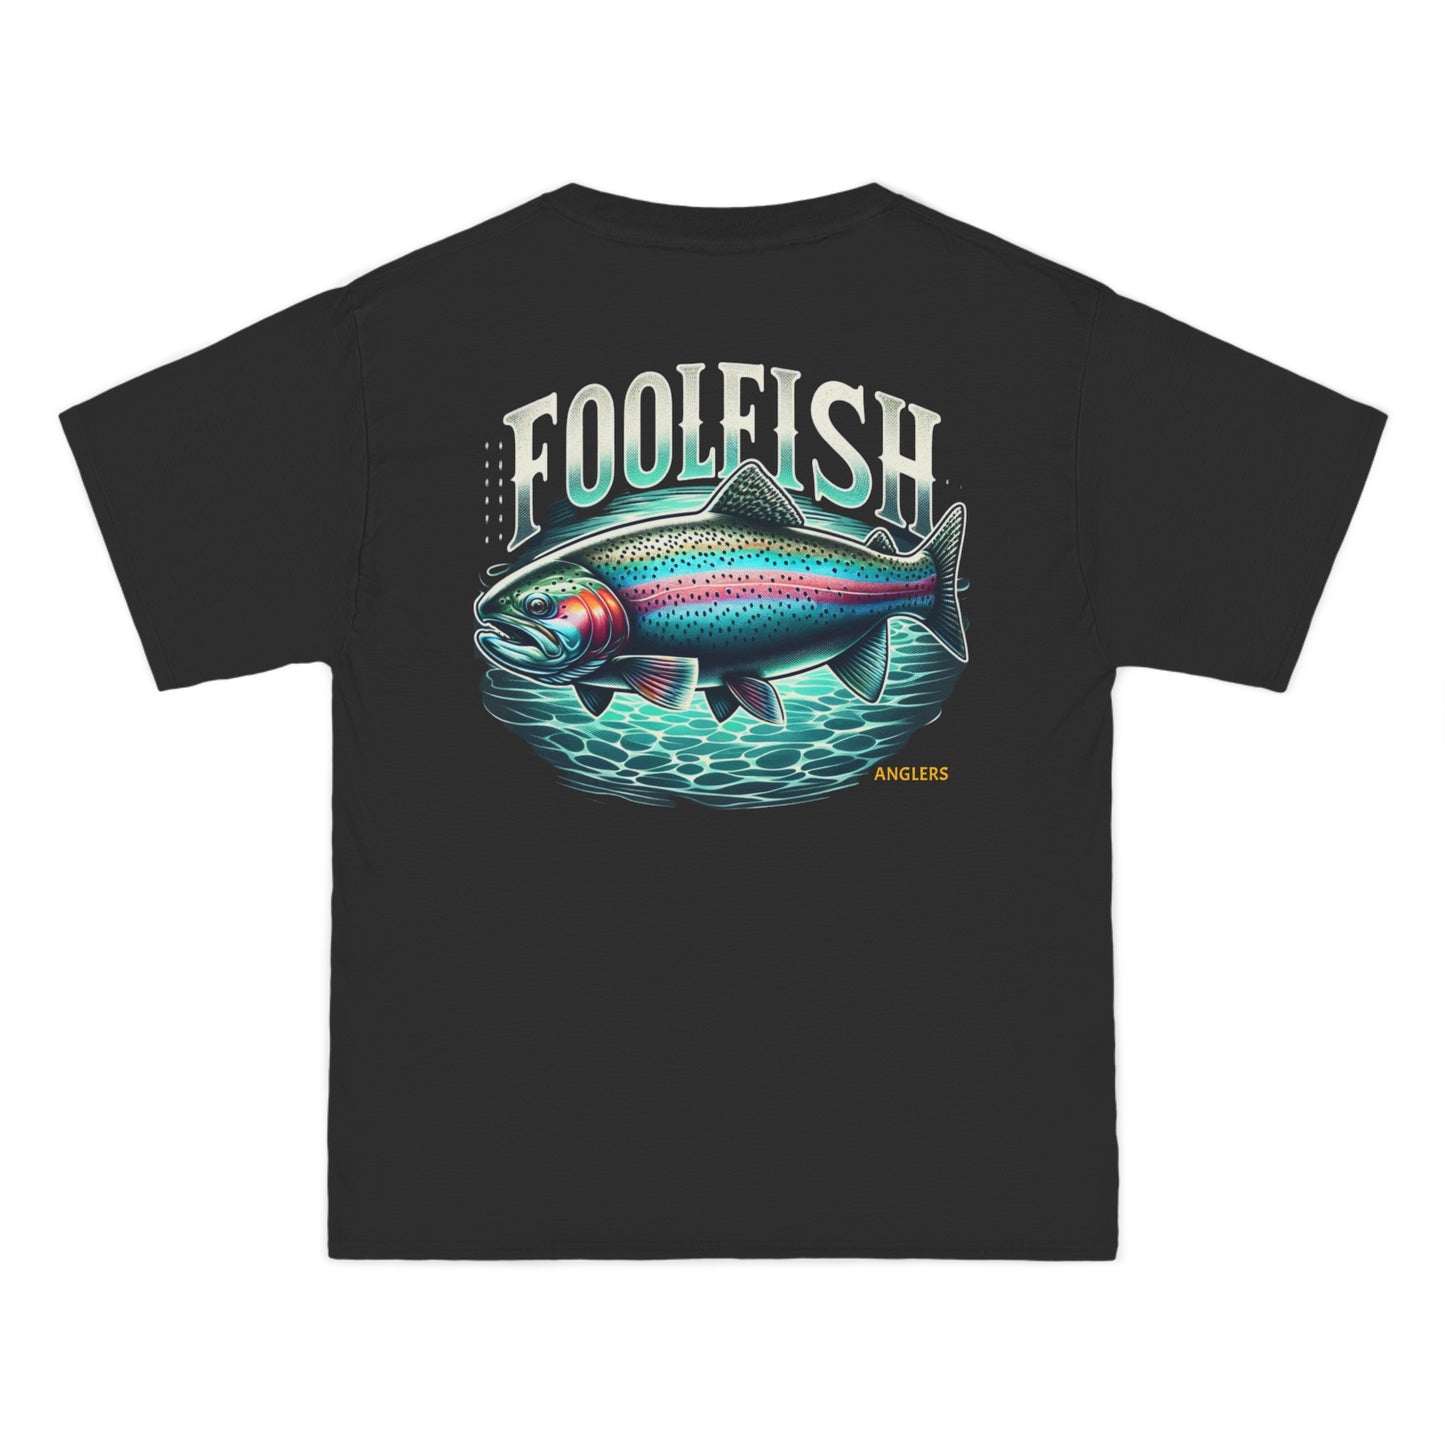 Foolfish - Rainbow Trout Premium Tee